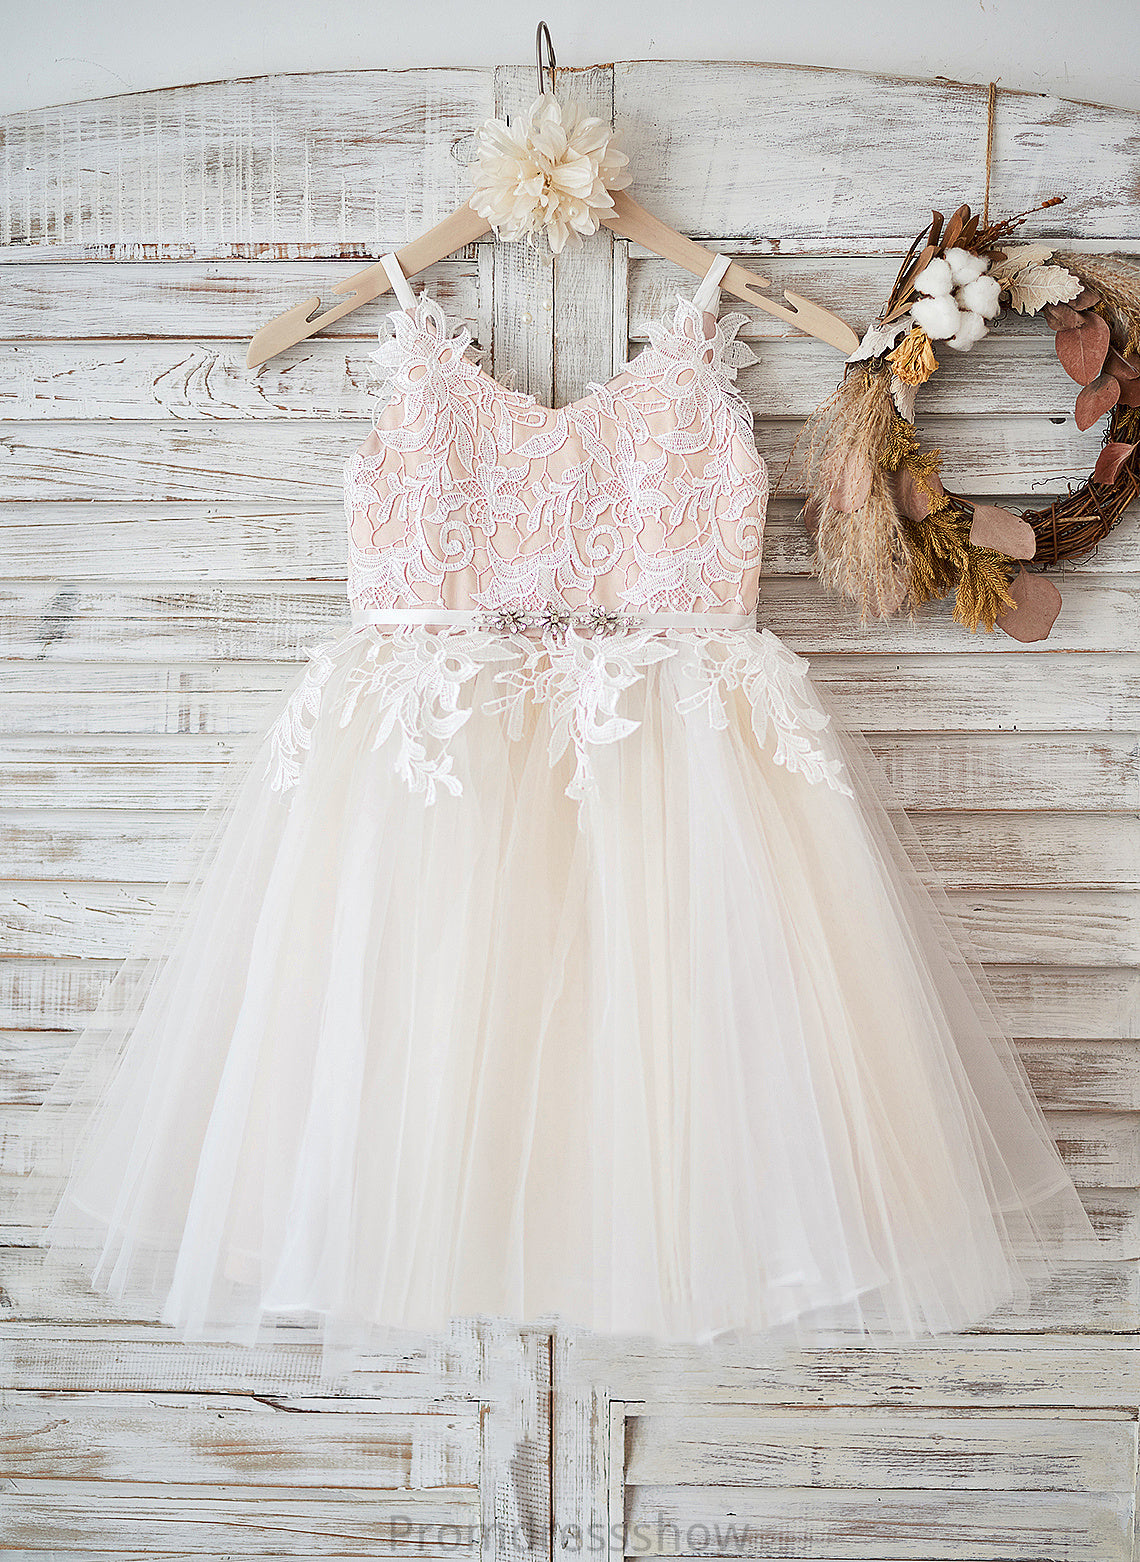 Sleeveless Adalyn Flower Girl Dresses - Tulle/Lace Flower Knee-length Straps Dress A-Line Girl